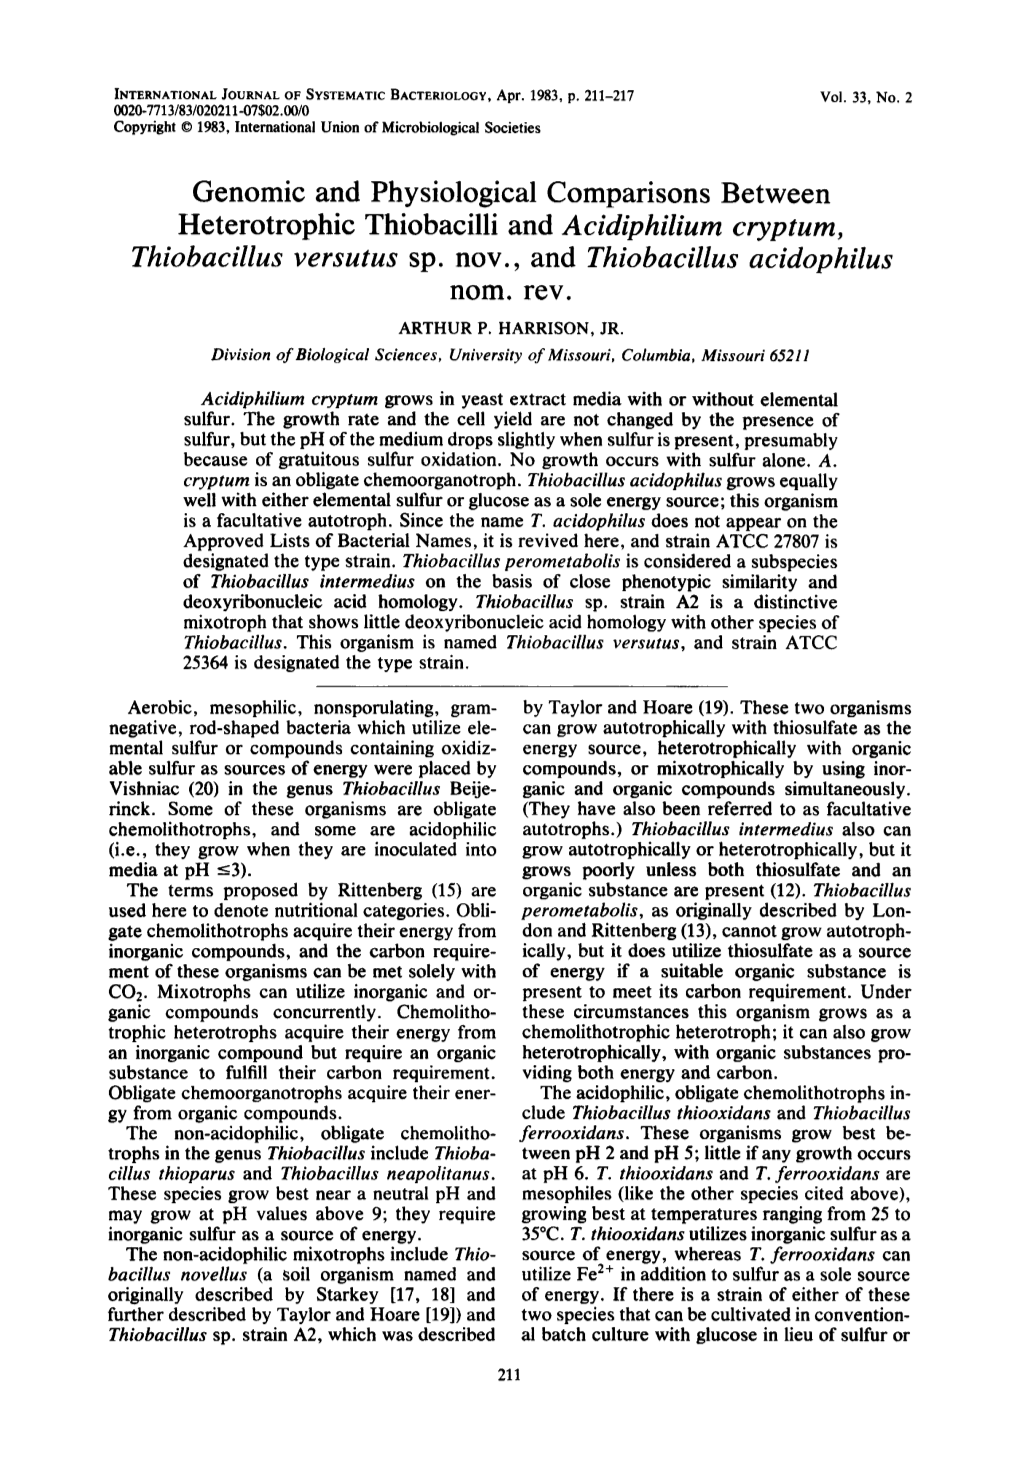 Genomic and Physiological Comparisons Between Heterotrophic Thiobacilli and Acidiphilium Cryptum, Thiobacillus Versutus Sp